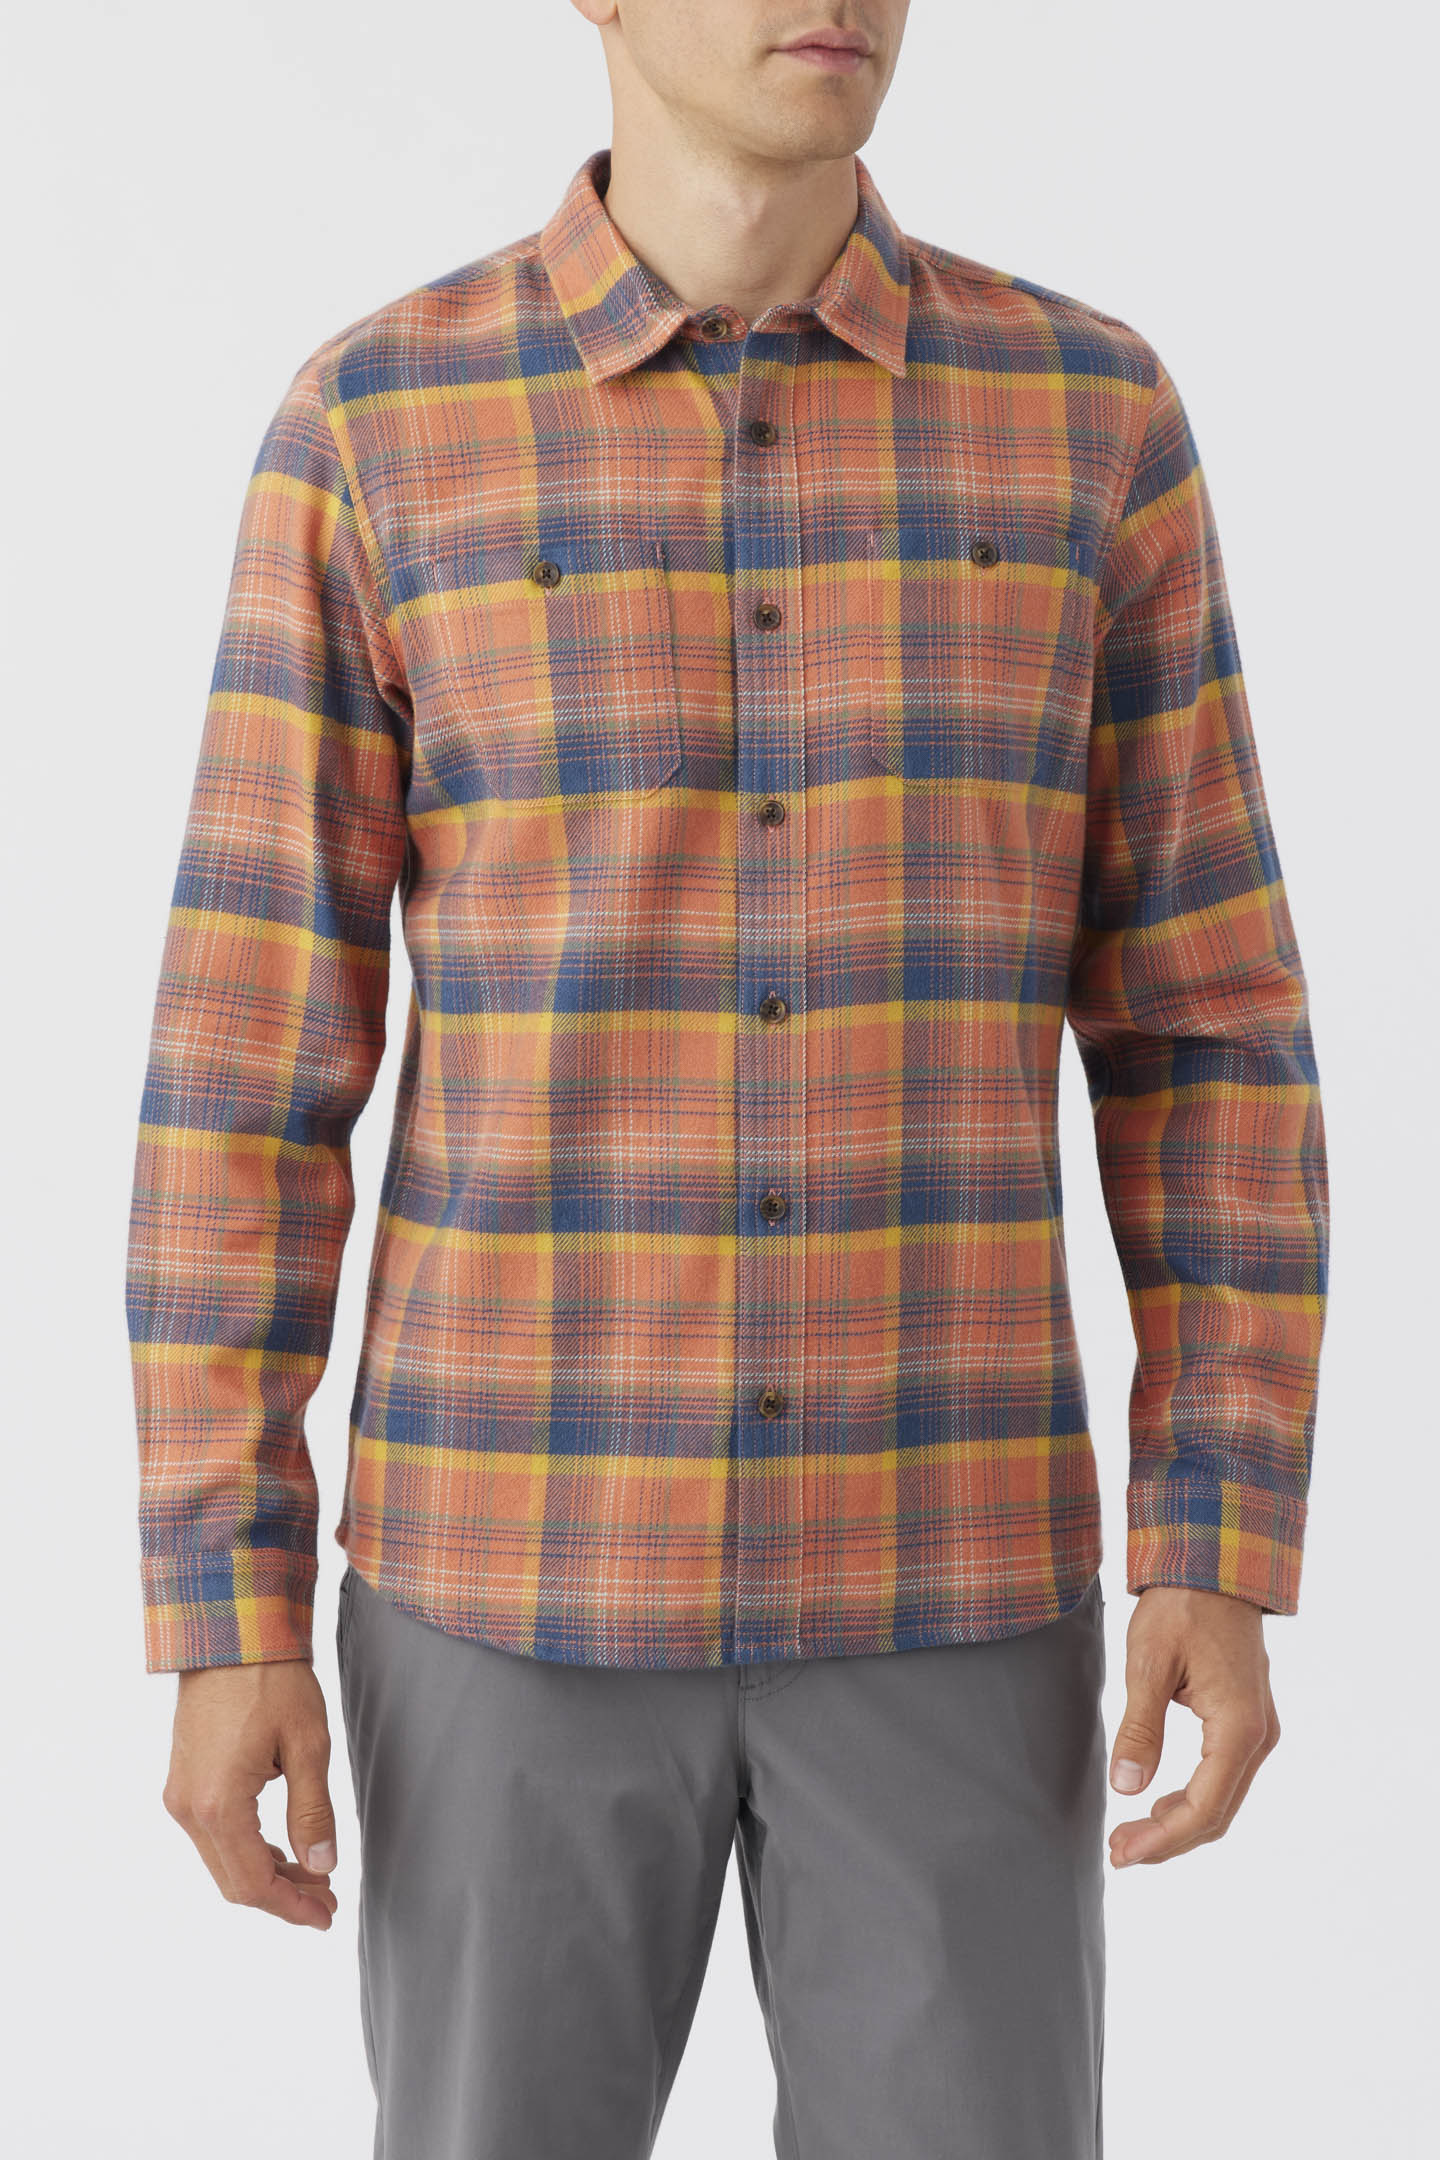 Og Jonez Flannel Long Sleeve Shirt - Auburn